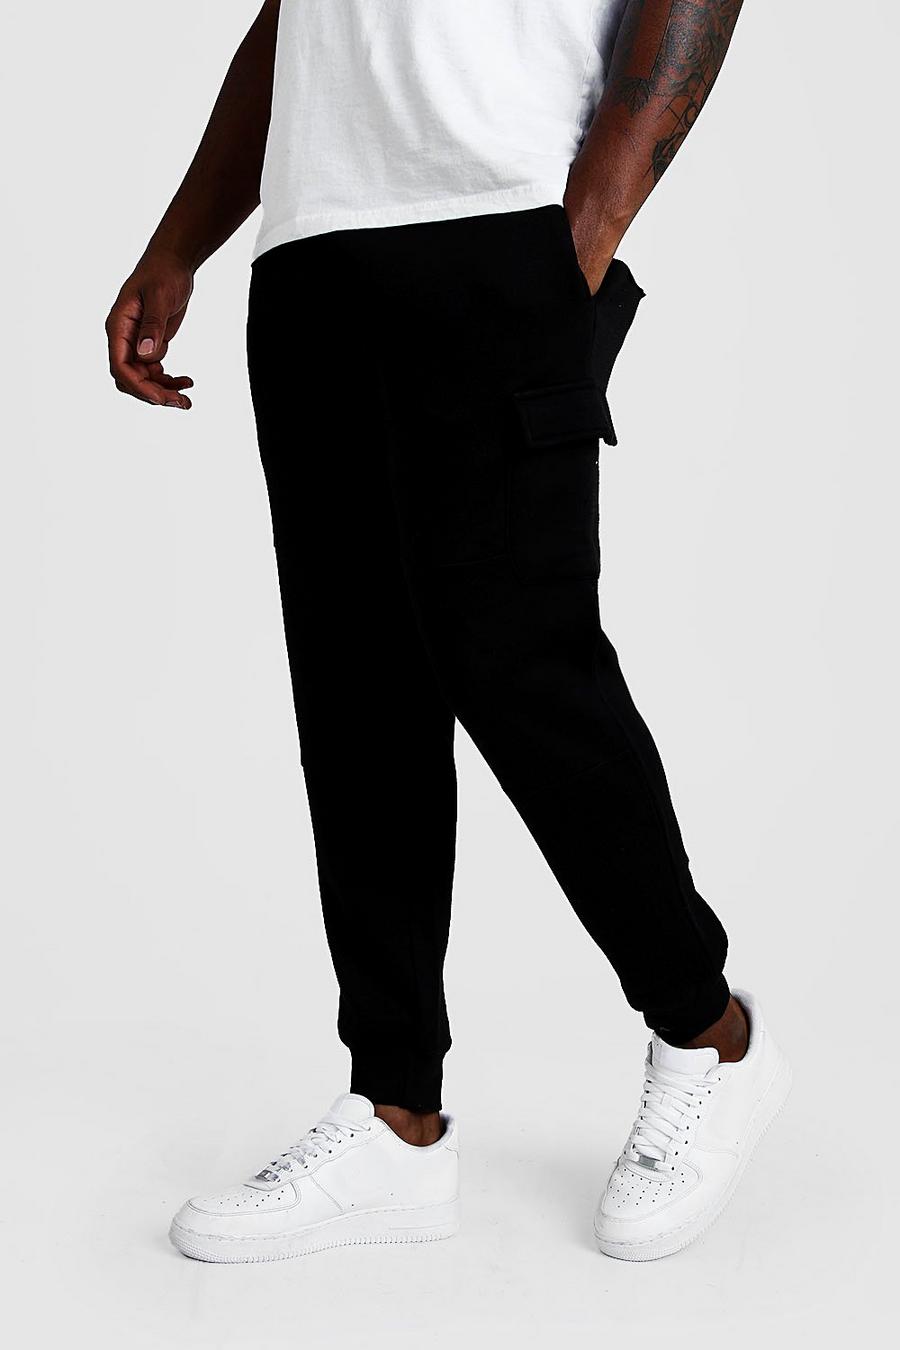 שחור מכנסי ריצה דגמ"ח בייסיק בגזרת סקיני לגברים גדולים וגבוהים image number 1